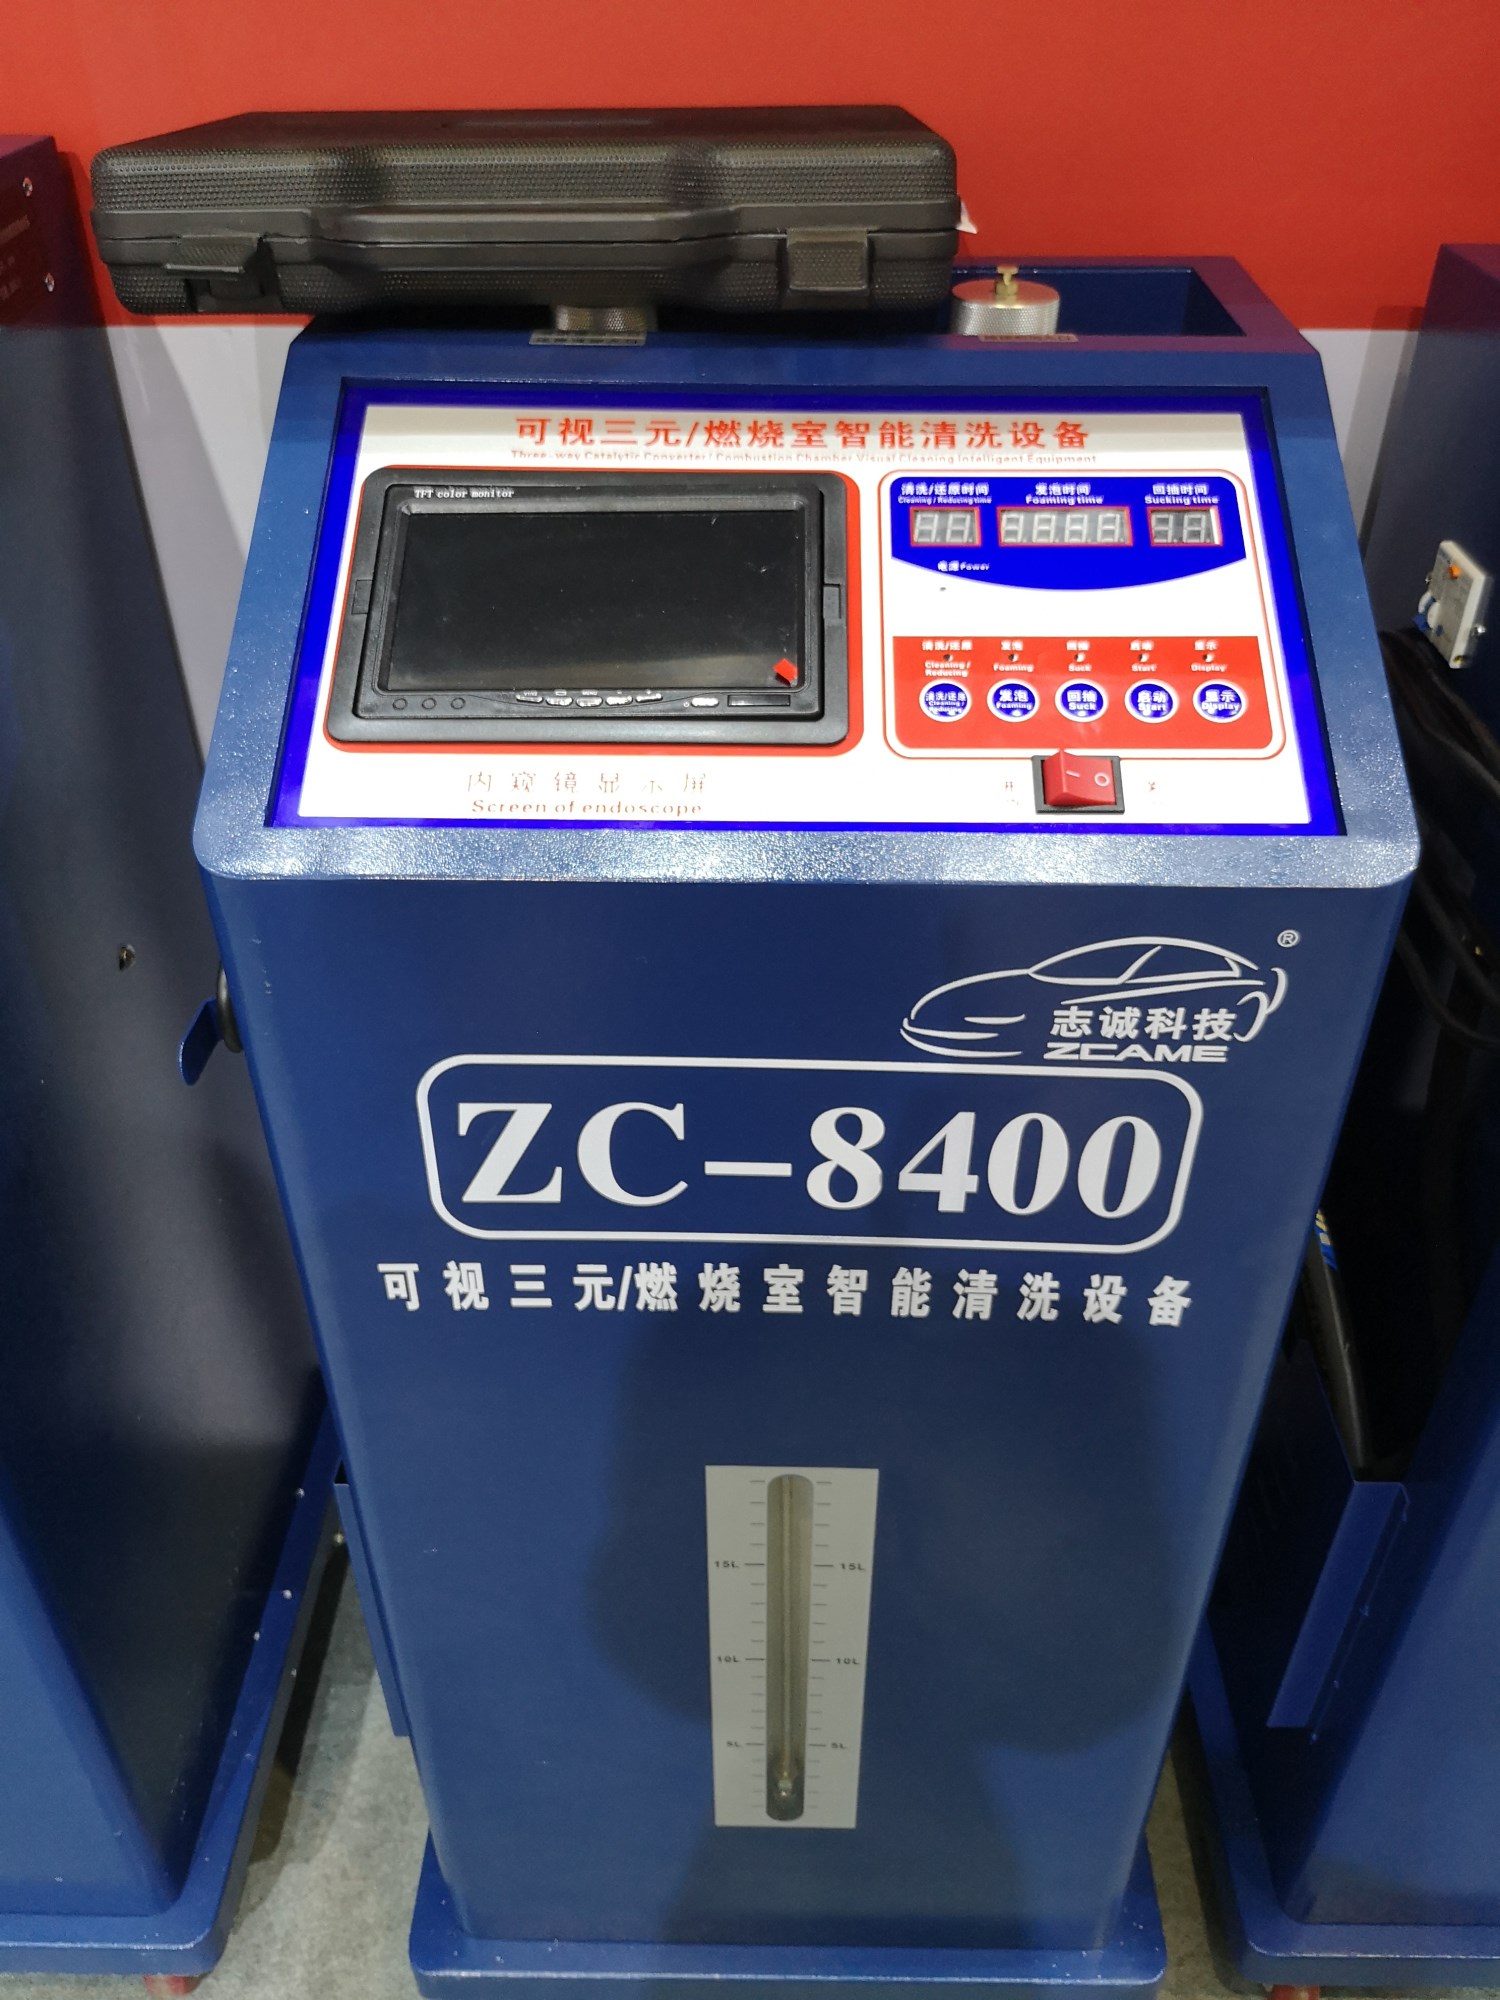 ZC-8400可视三元/燃烧室智能清洗设备